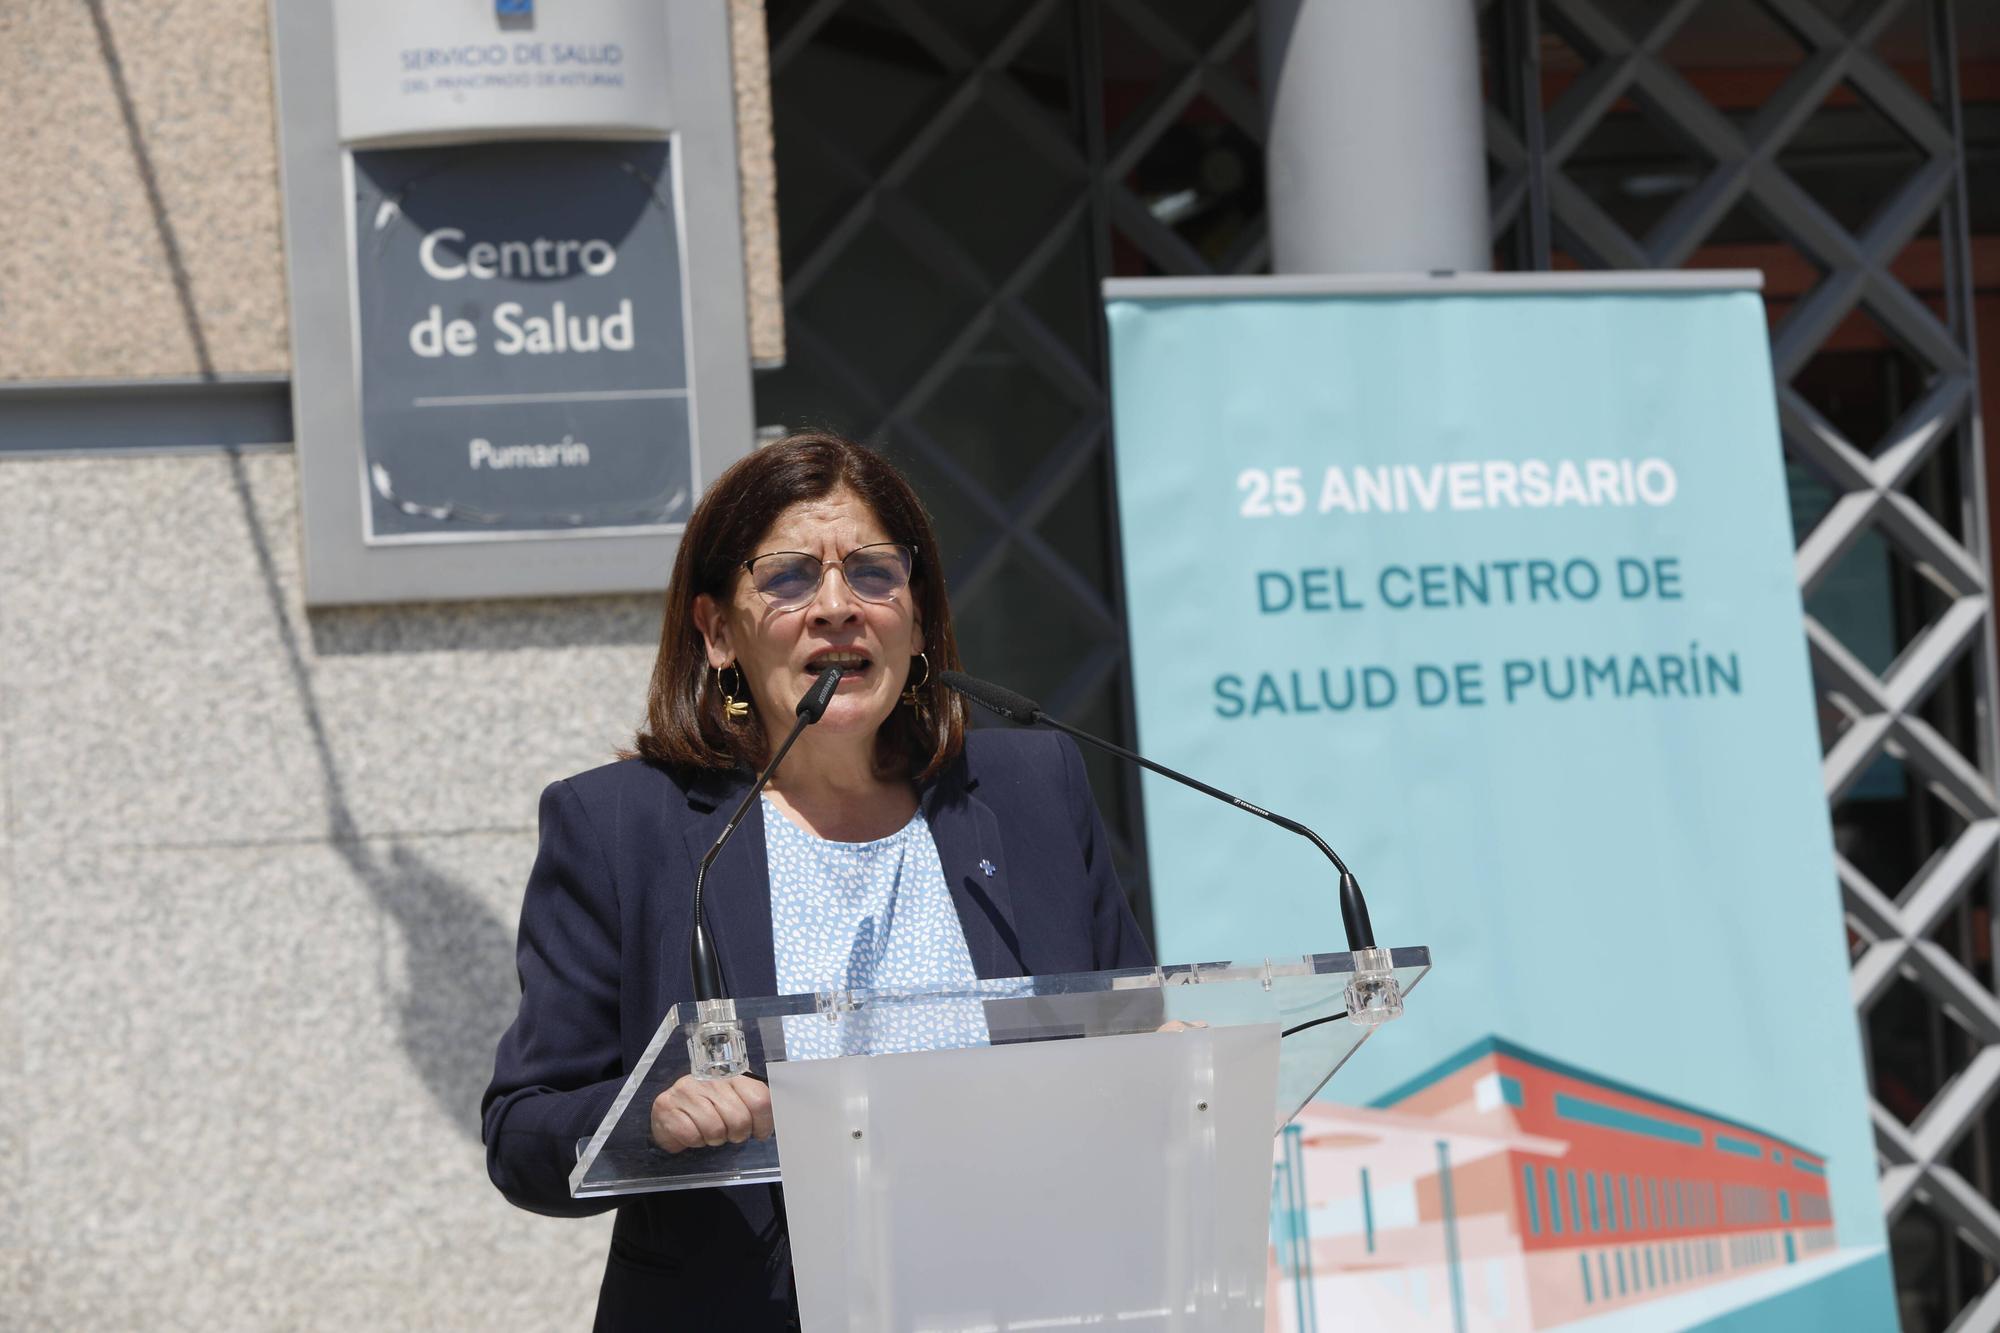 Celebraciones por el 25º aniversario del centro de salud de Pumarín